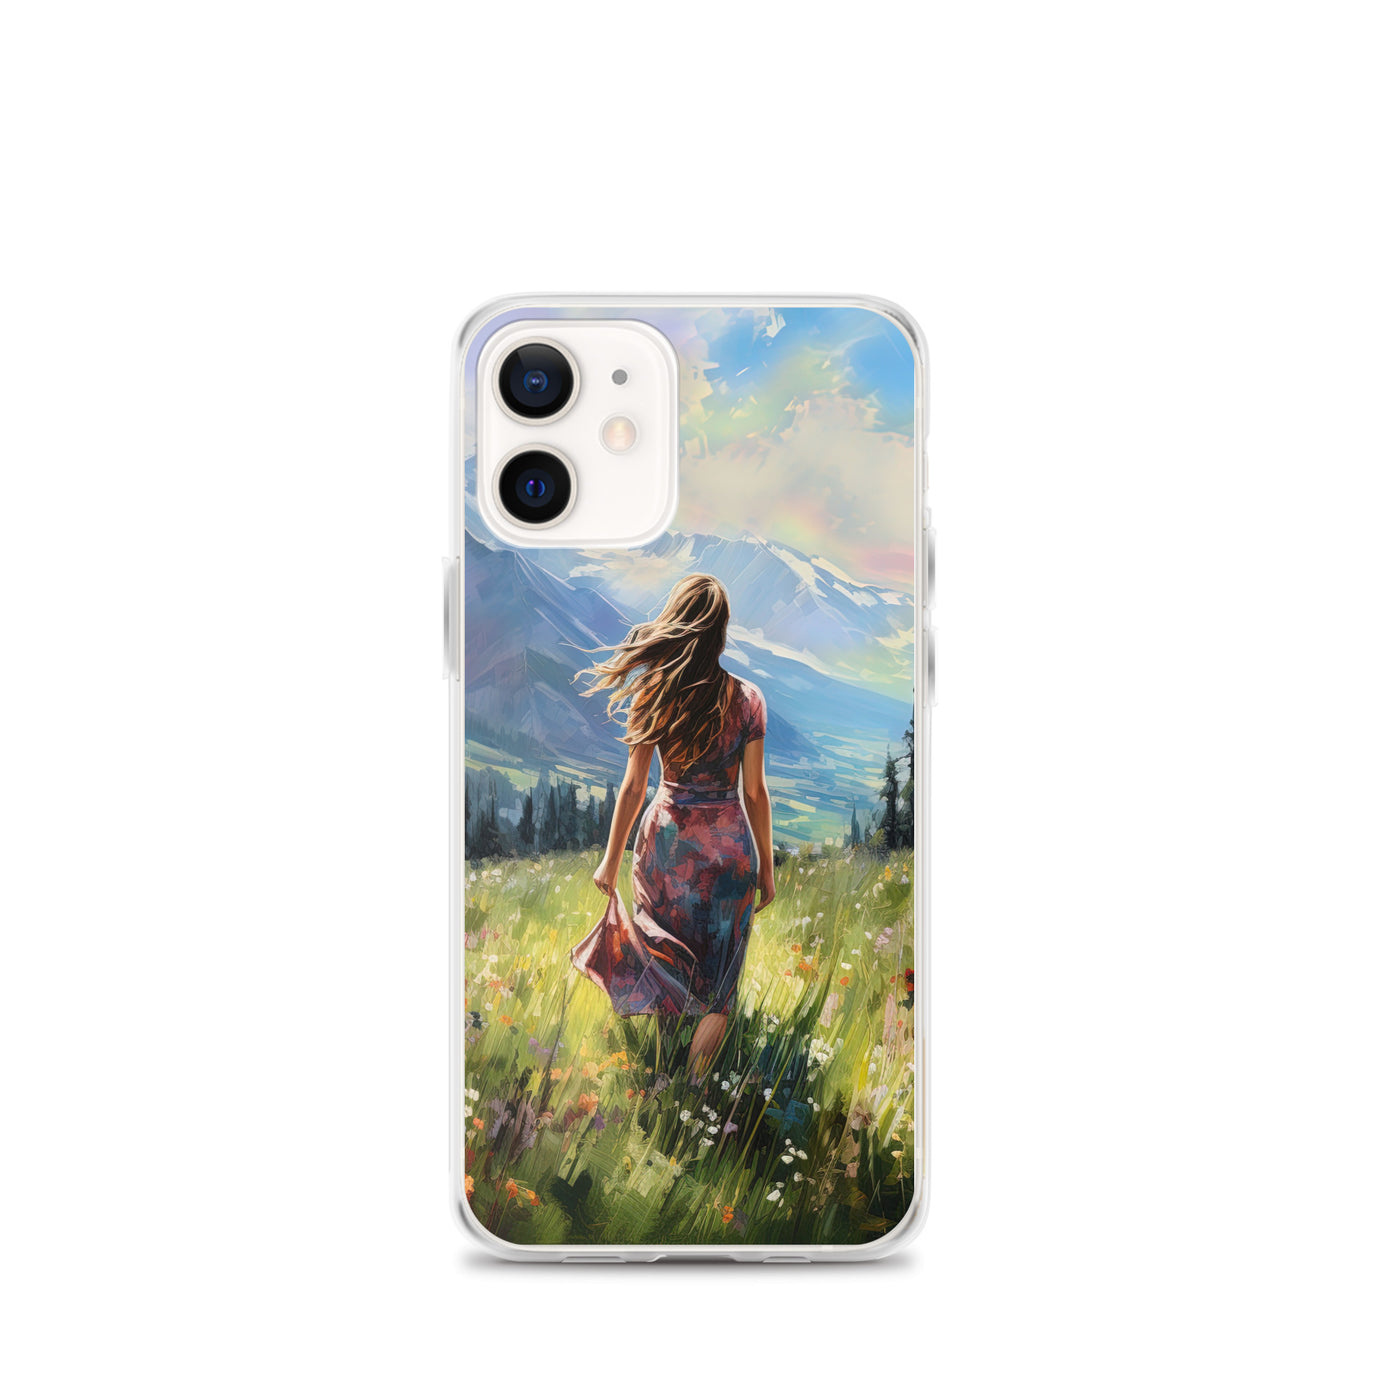 Frau mit langen Kleid im Feld mit Blumen - Berge im Hintergrund - Malerei - iPhone Schutzhülle (durchsichtig) berge xxx iPhone 12 mini